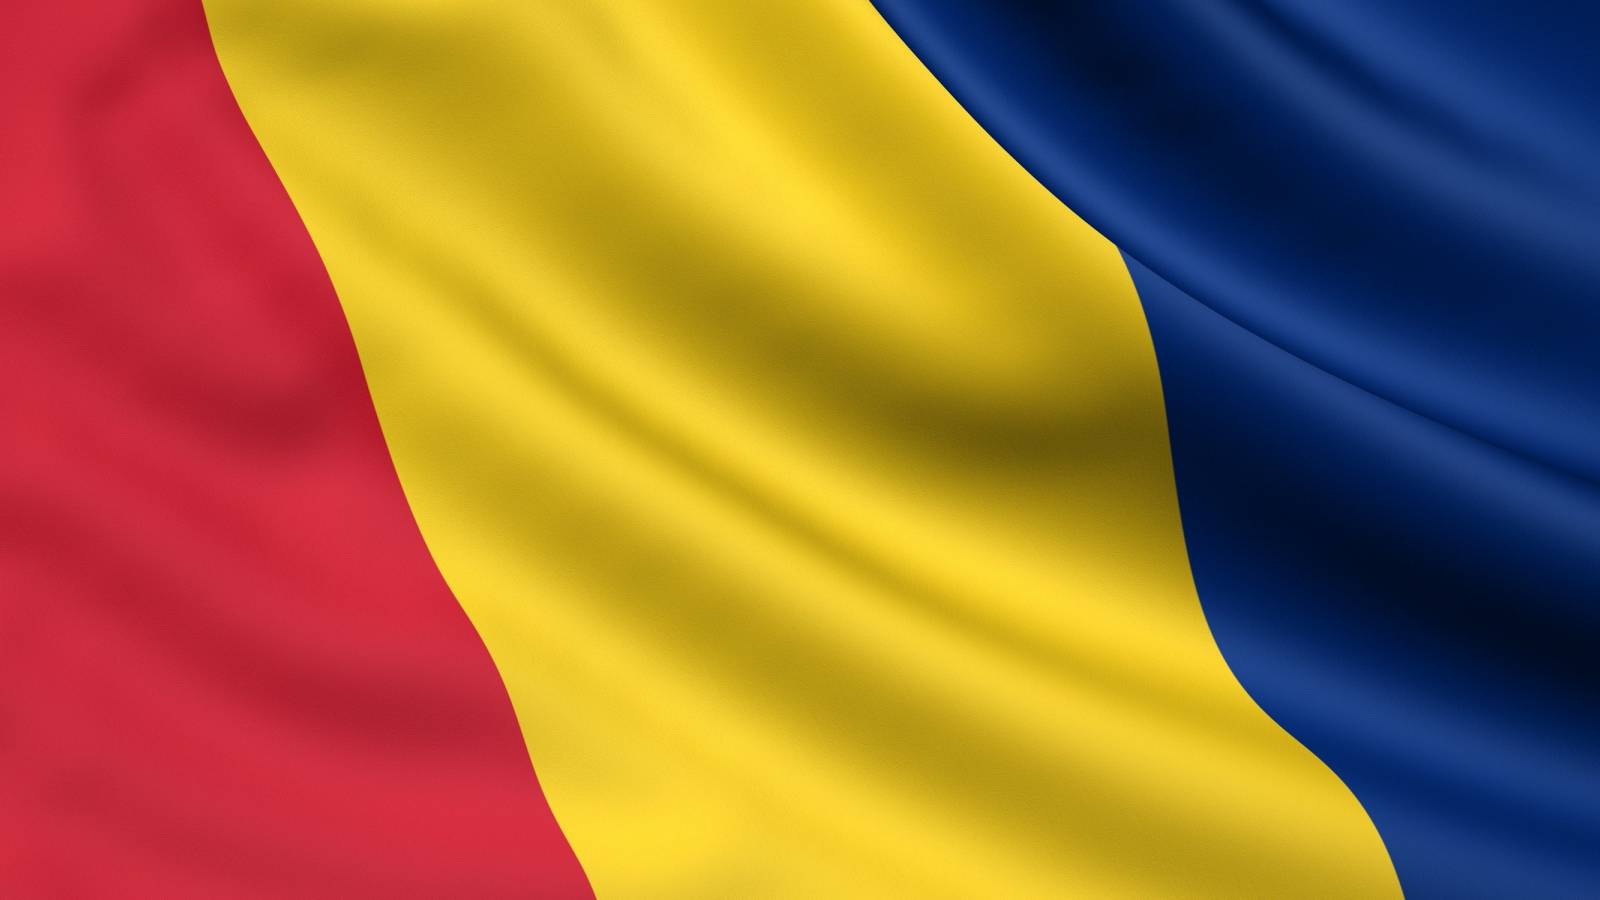 Romaniassa on kirjattu koronavirusrokotuksia